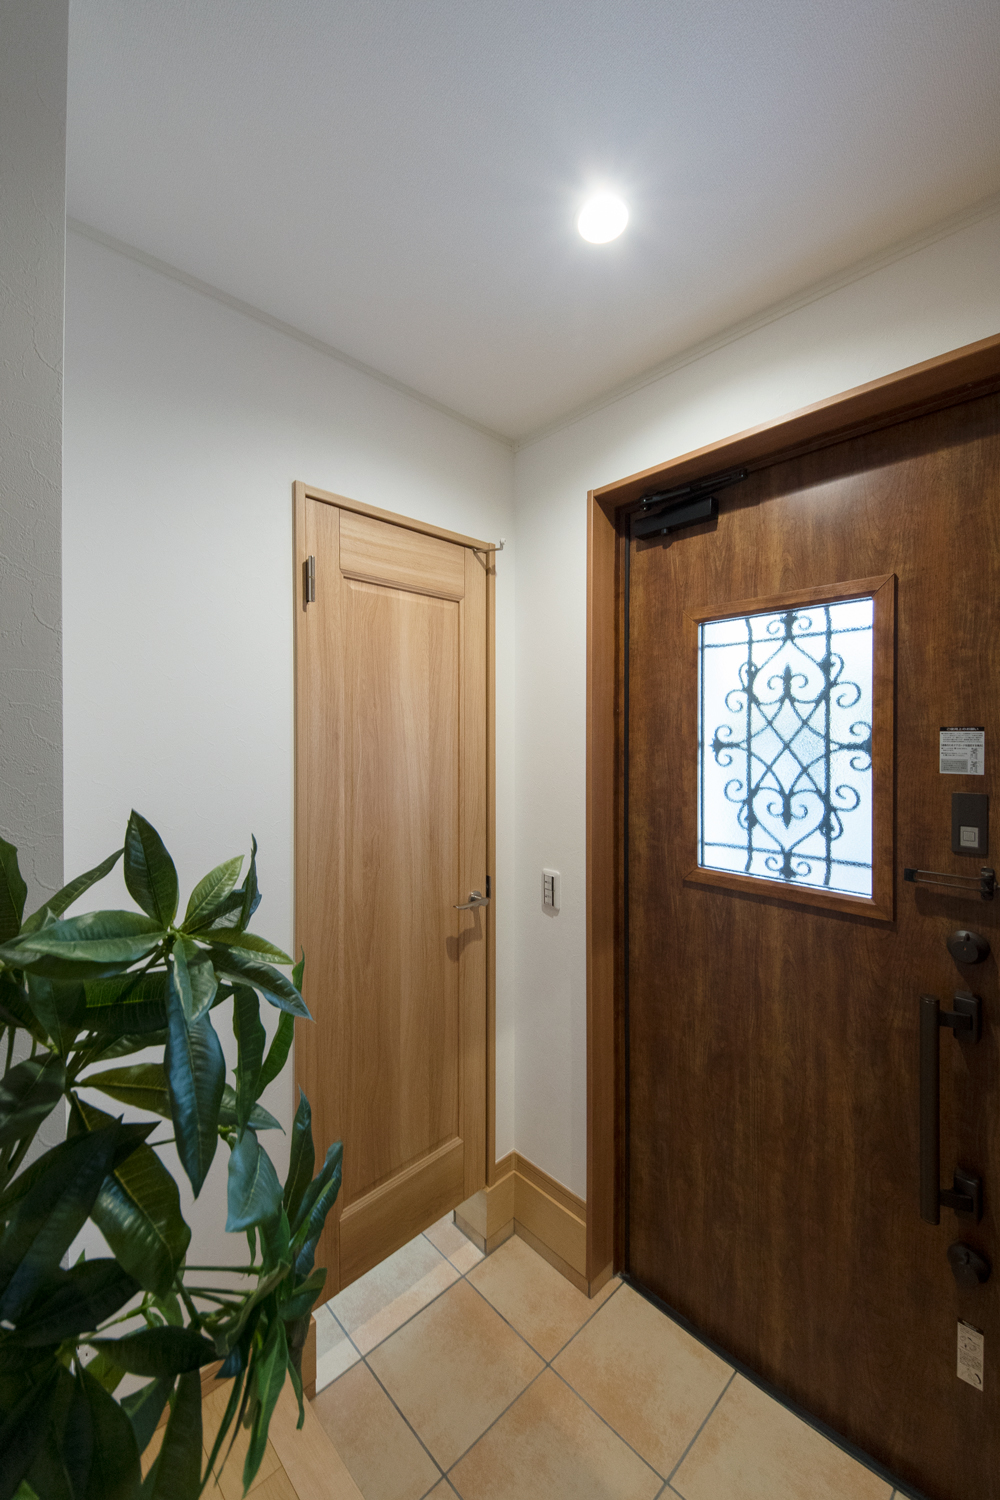 2つ並んだハートのアイアンにゆるい曲線のドアハンドルデザインが可愛らしいアンティーク調玄関ドアを施しました。